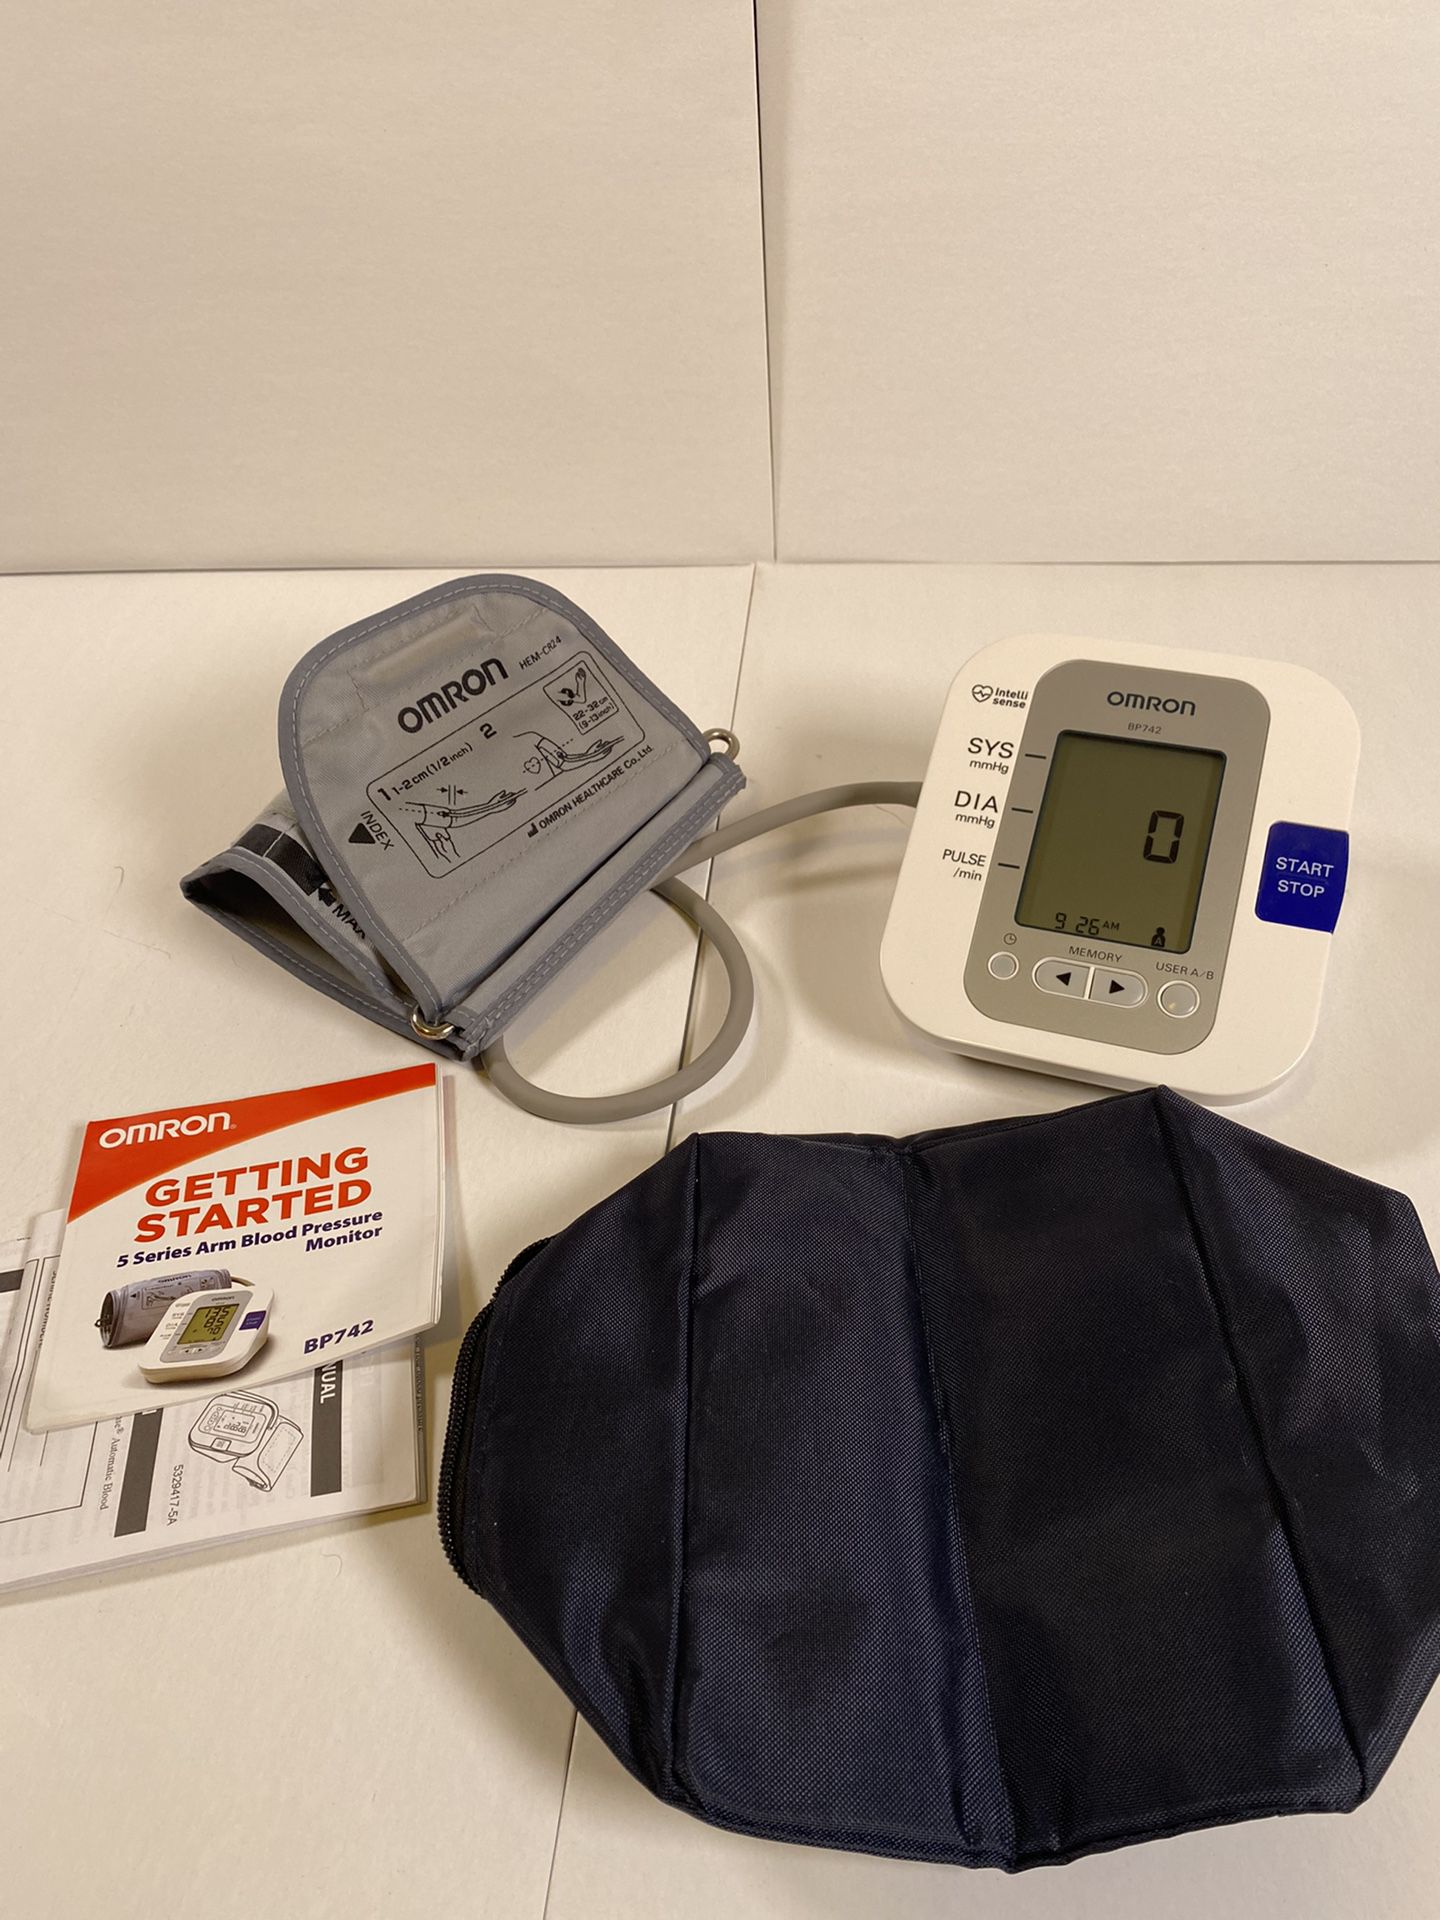 Blood Pressure Monitor “OMRON”